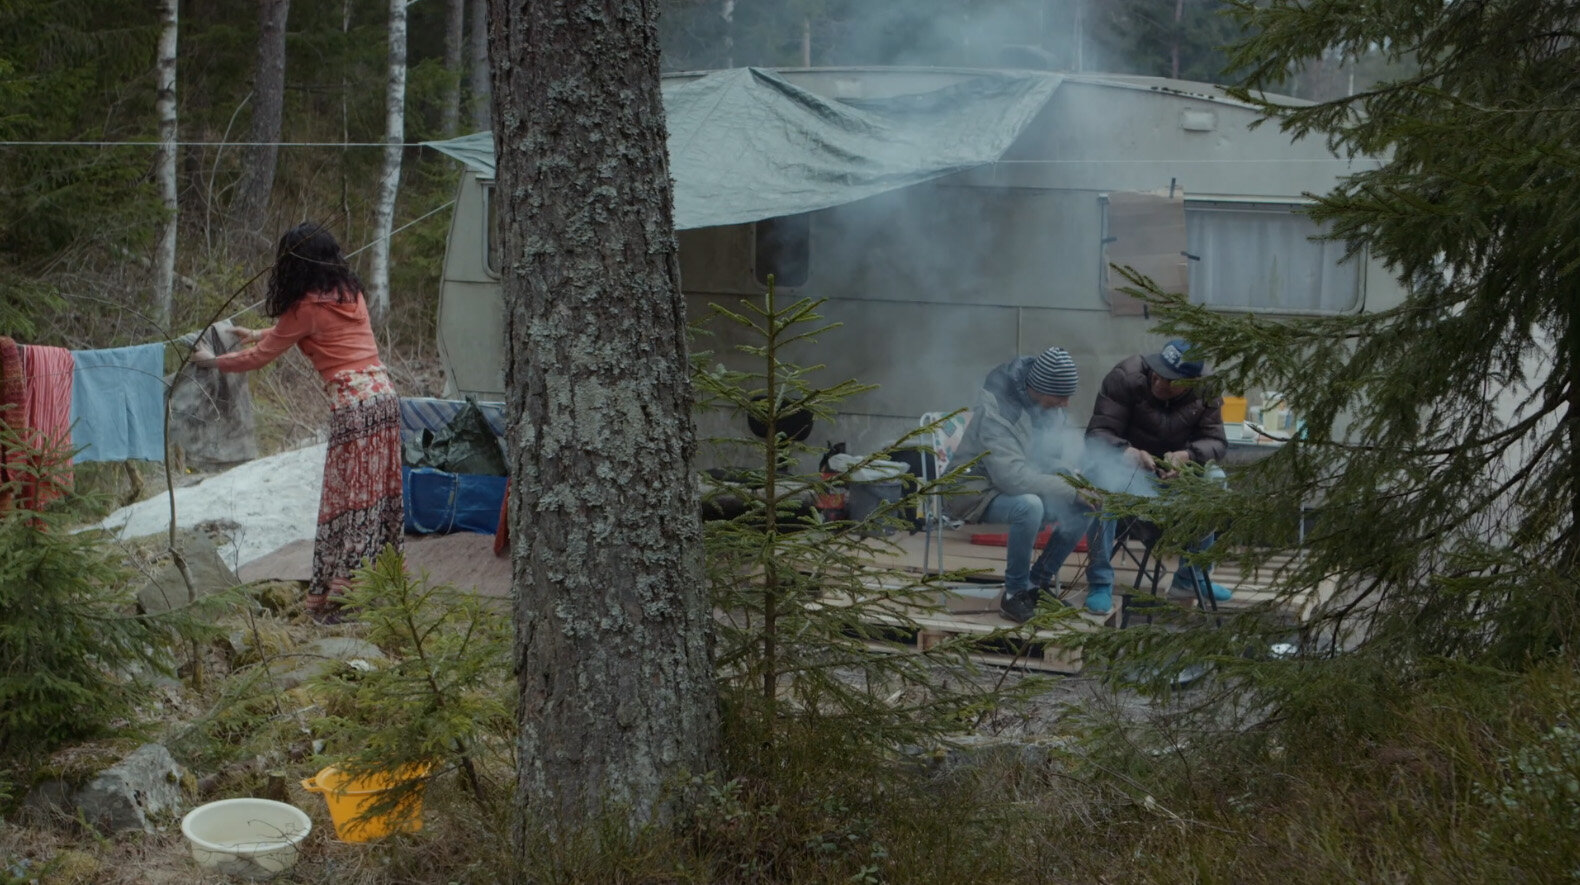  Stillbilde fra filmen  Prospect  (2017) av Mattias Härenstam. Gjengitt med tillatelse fra kunstneren. 